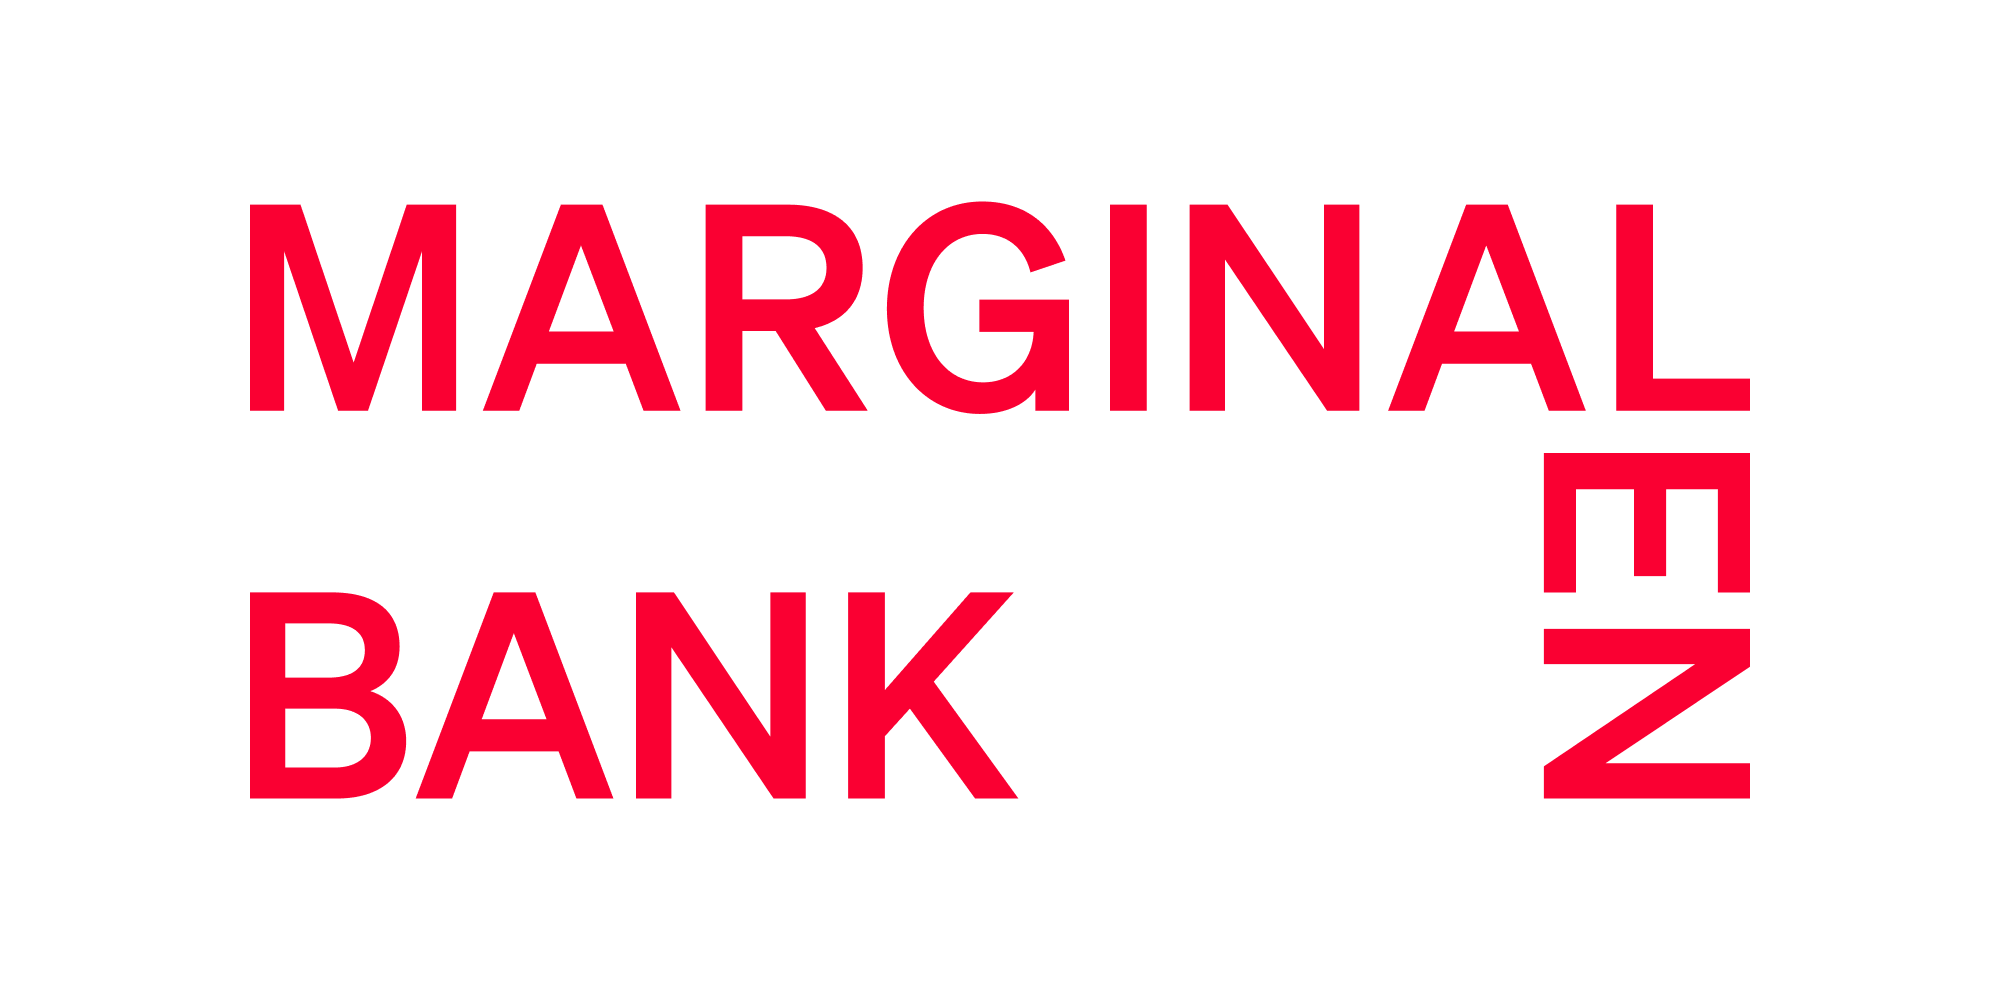 marginalen bank